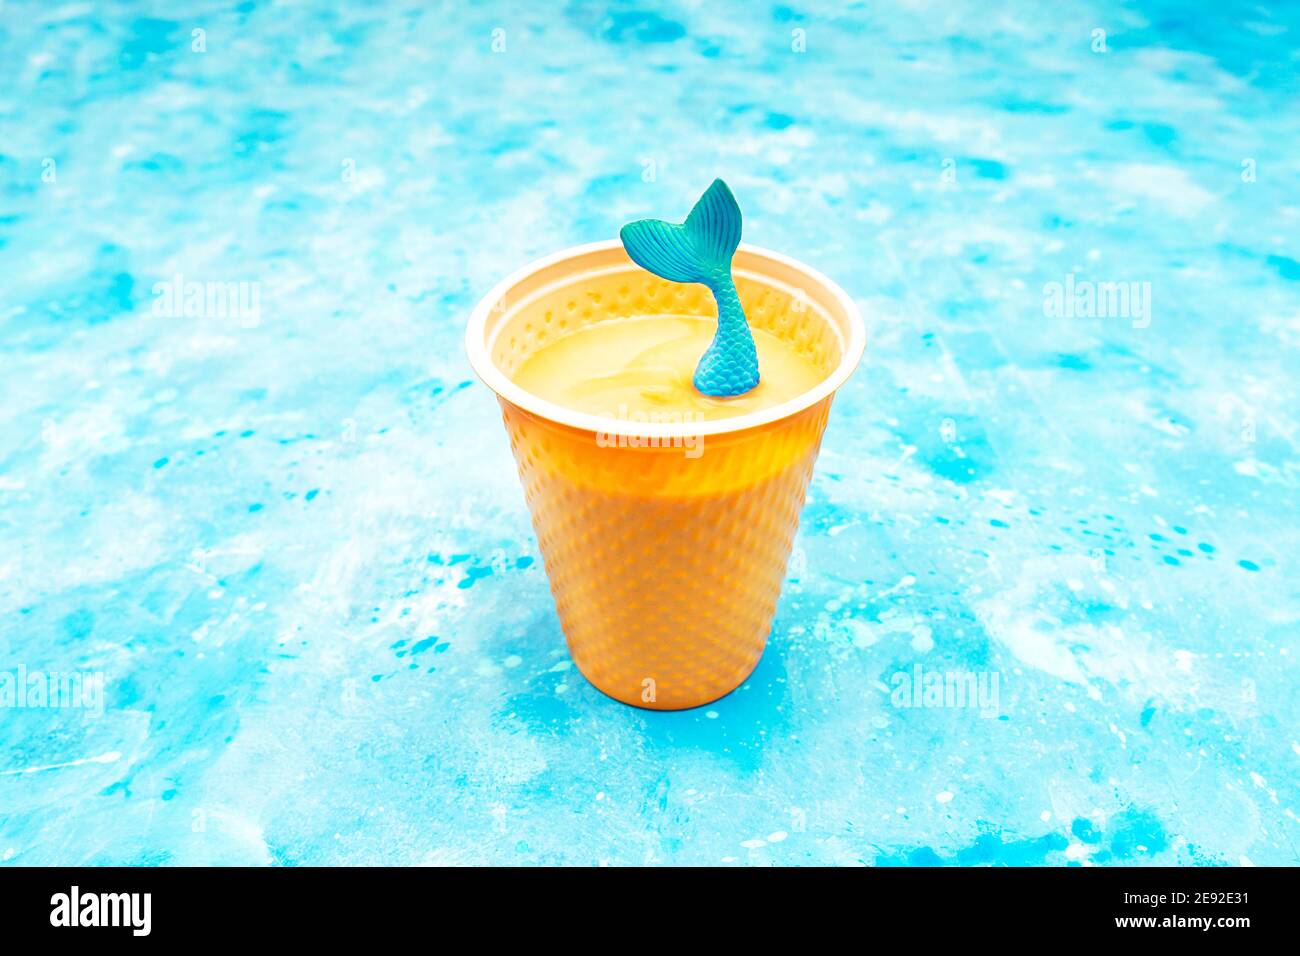 La coda della sirena giocattolo fuoriesce da una tazza di plastica di cappuccino su sfondo azzurro Foto Stock